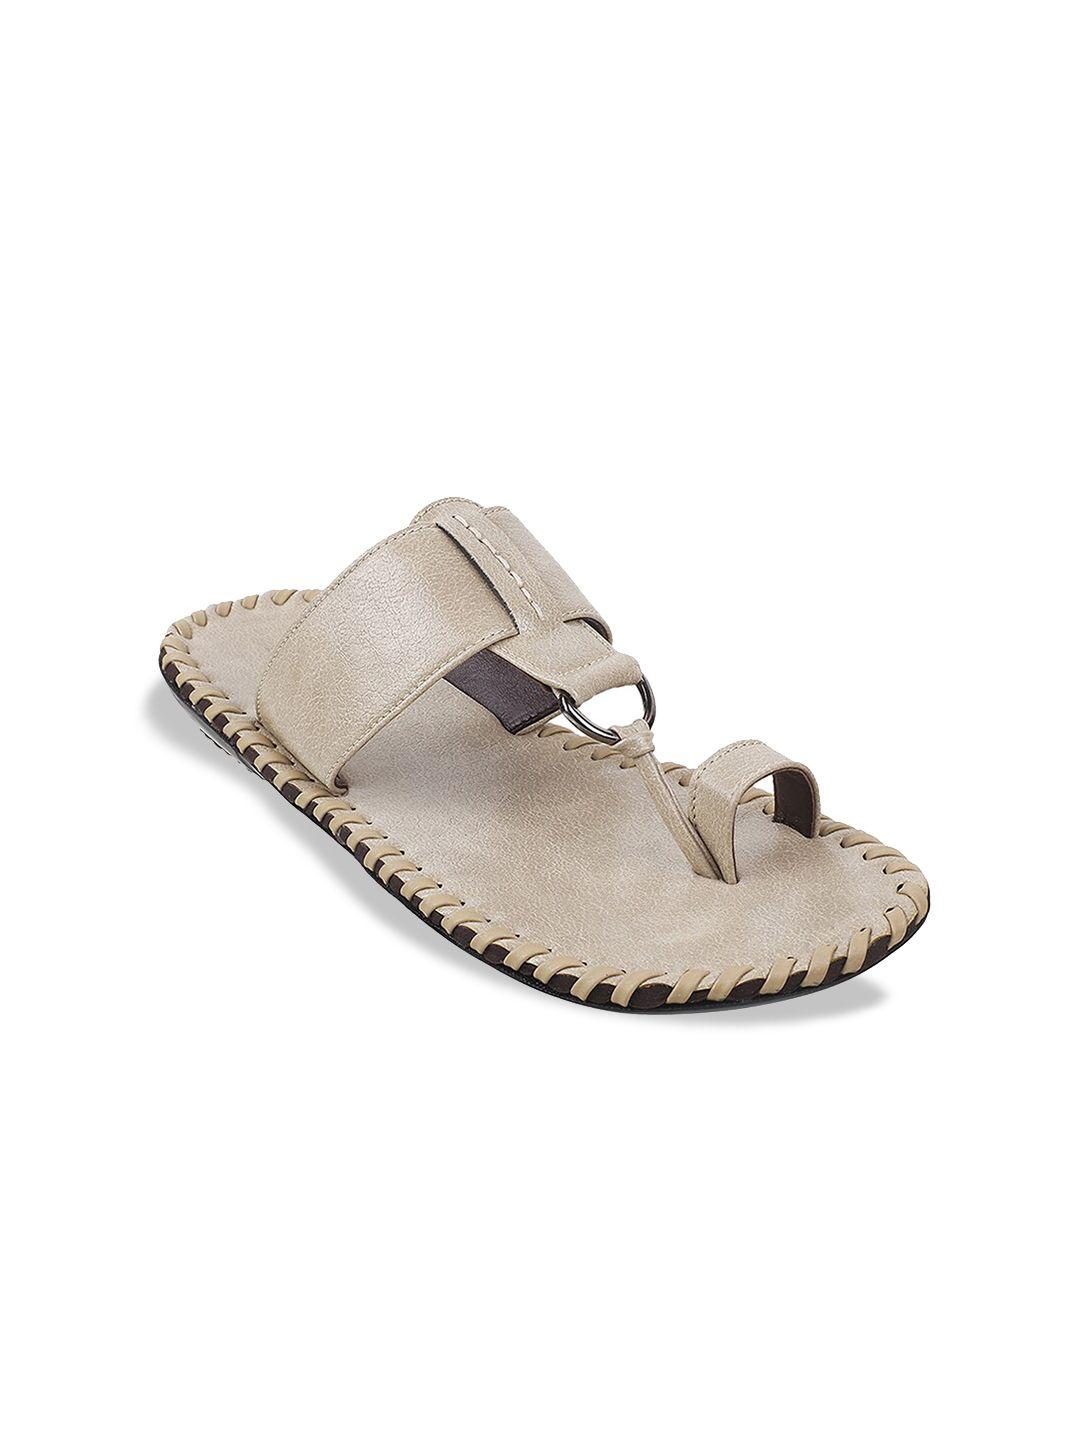 mochi men beige ethnic comfort sandals